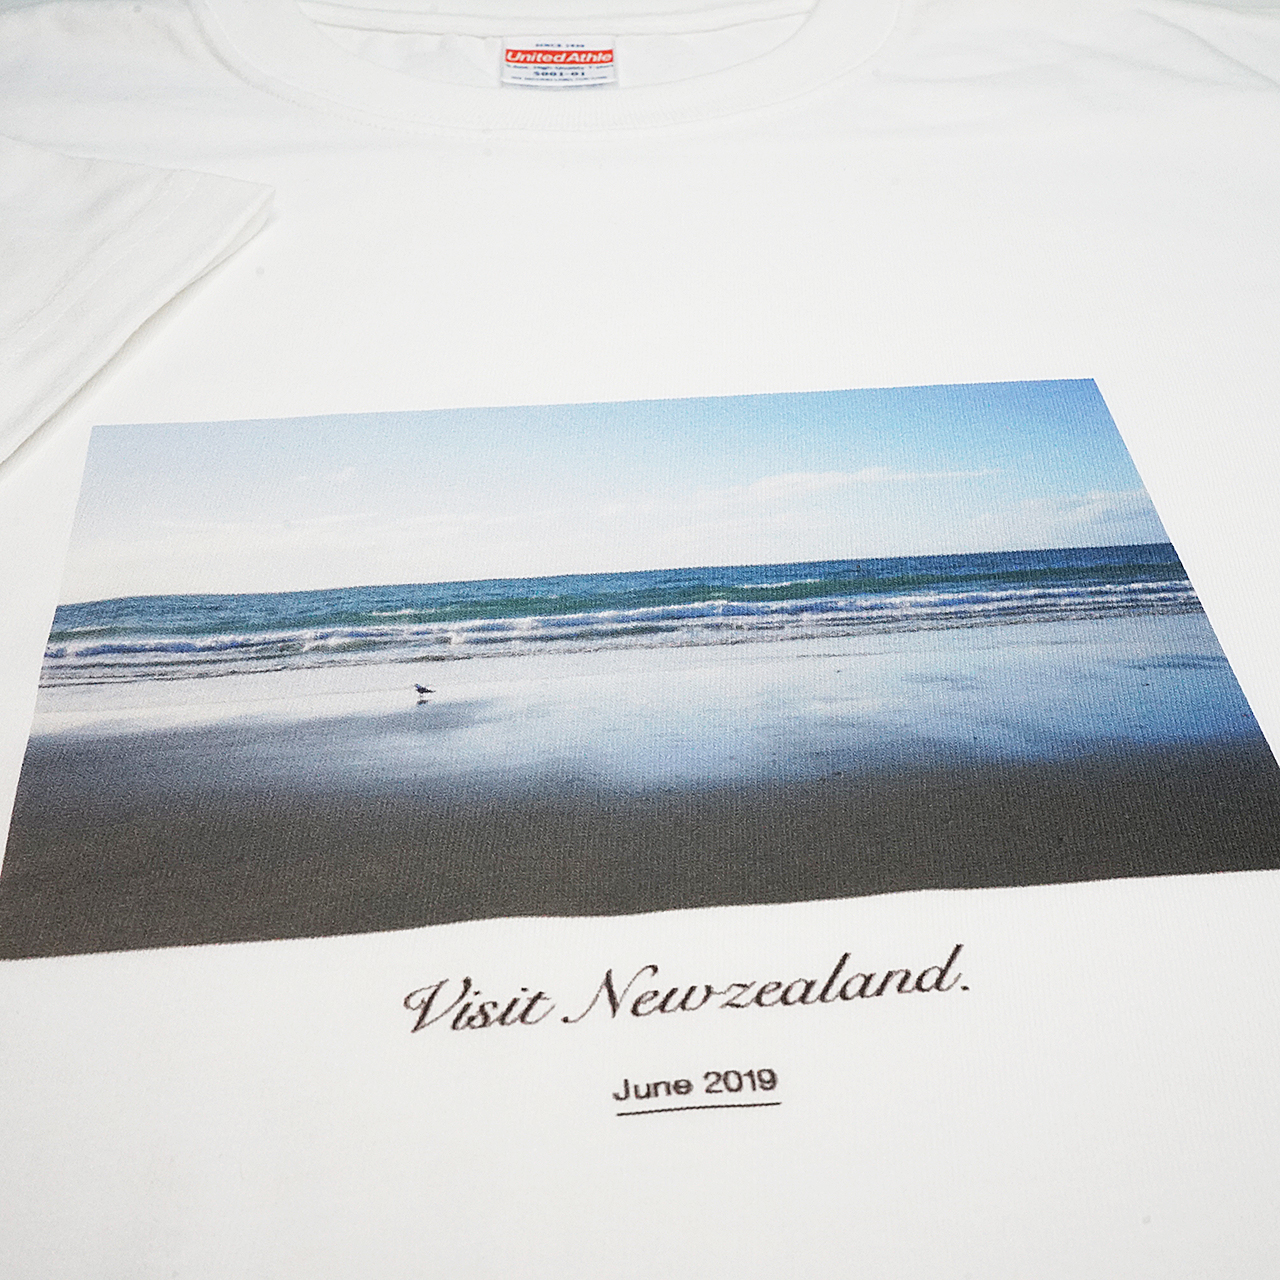 ガーメントプリンターで印刷したニュージーランドをイメージしたプリントのTシャツ